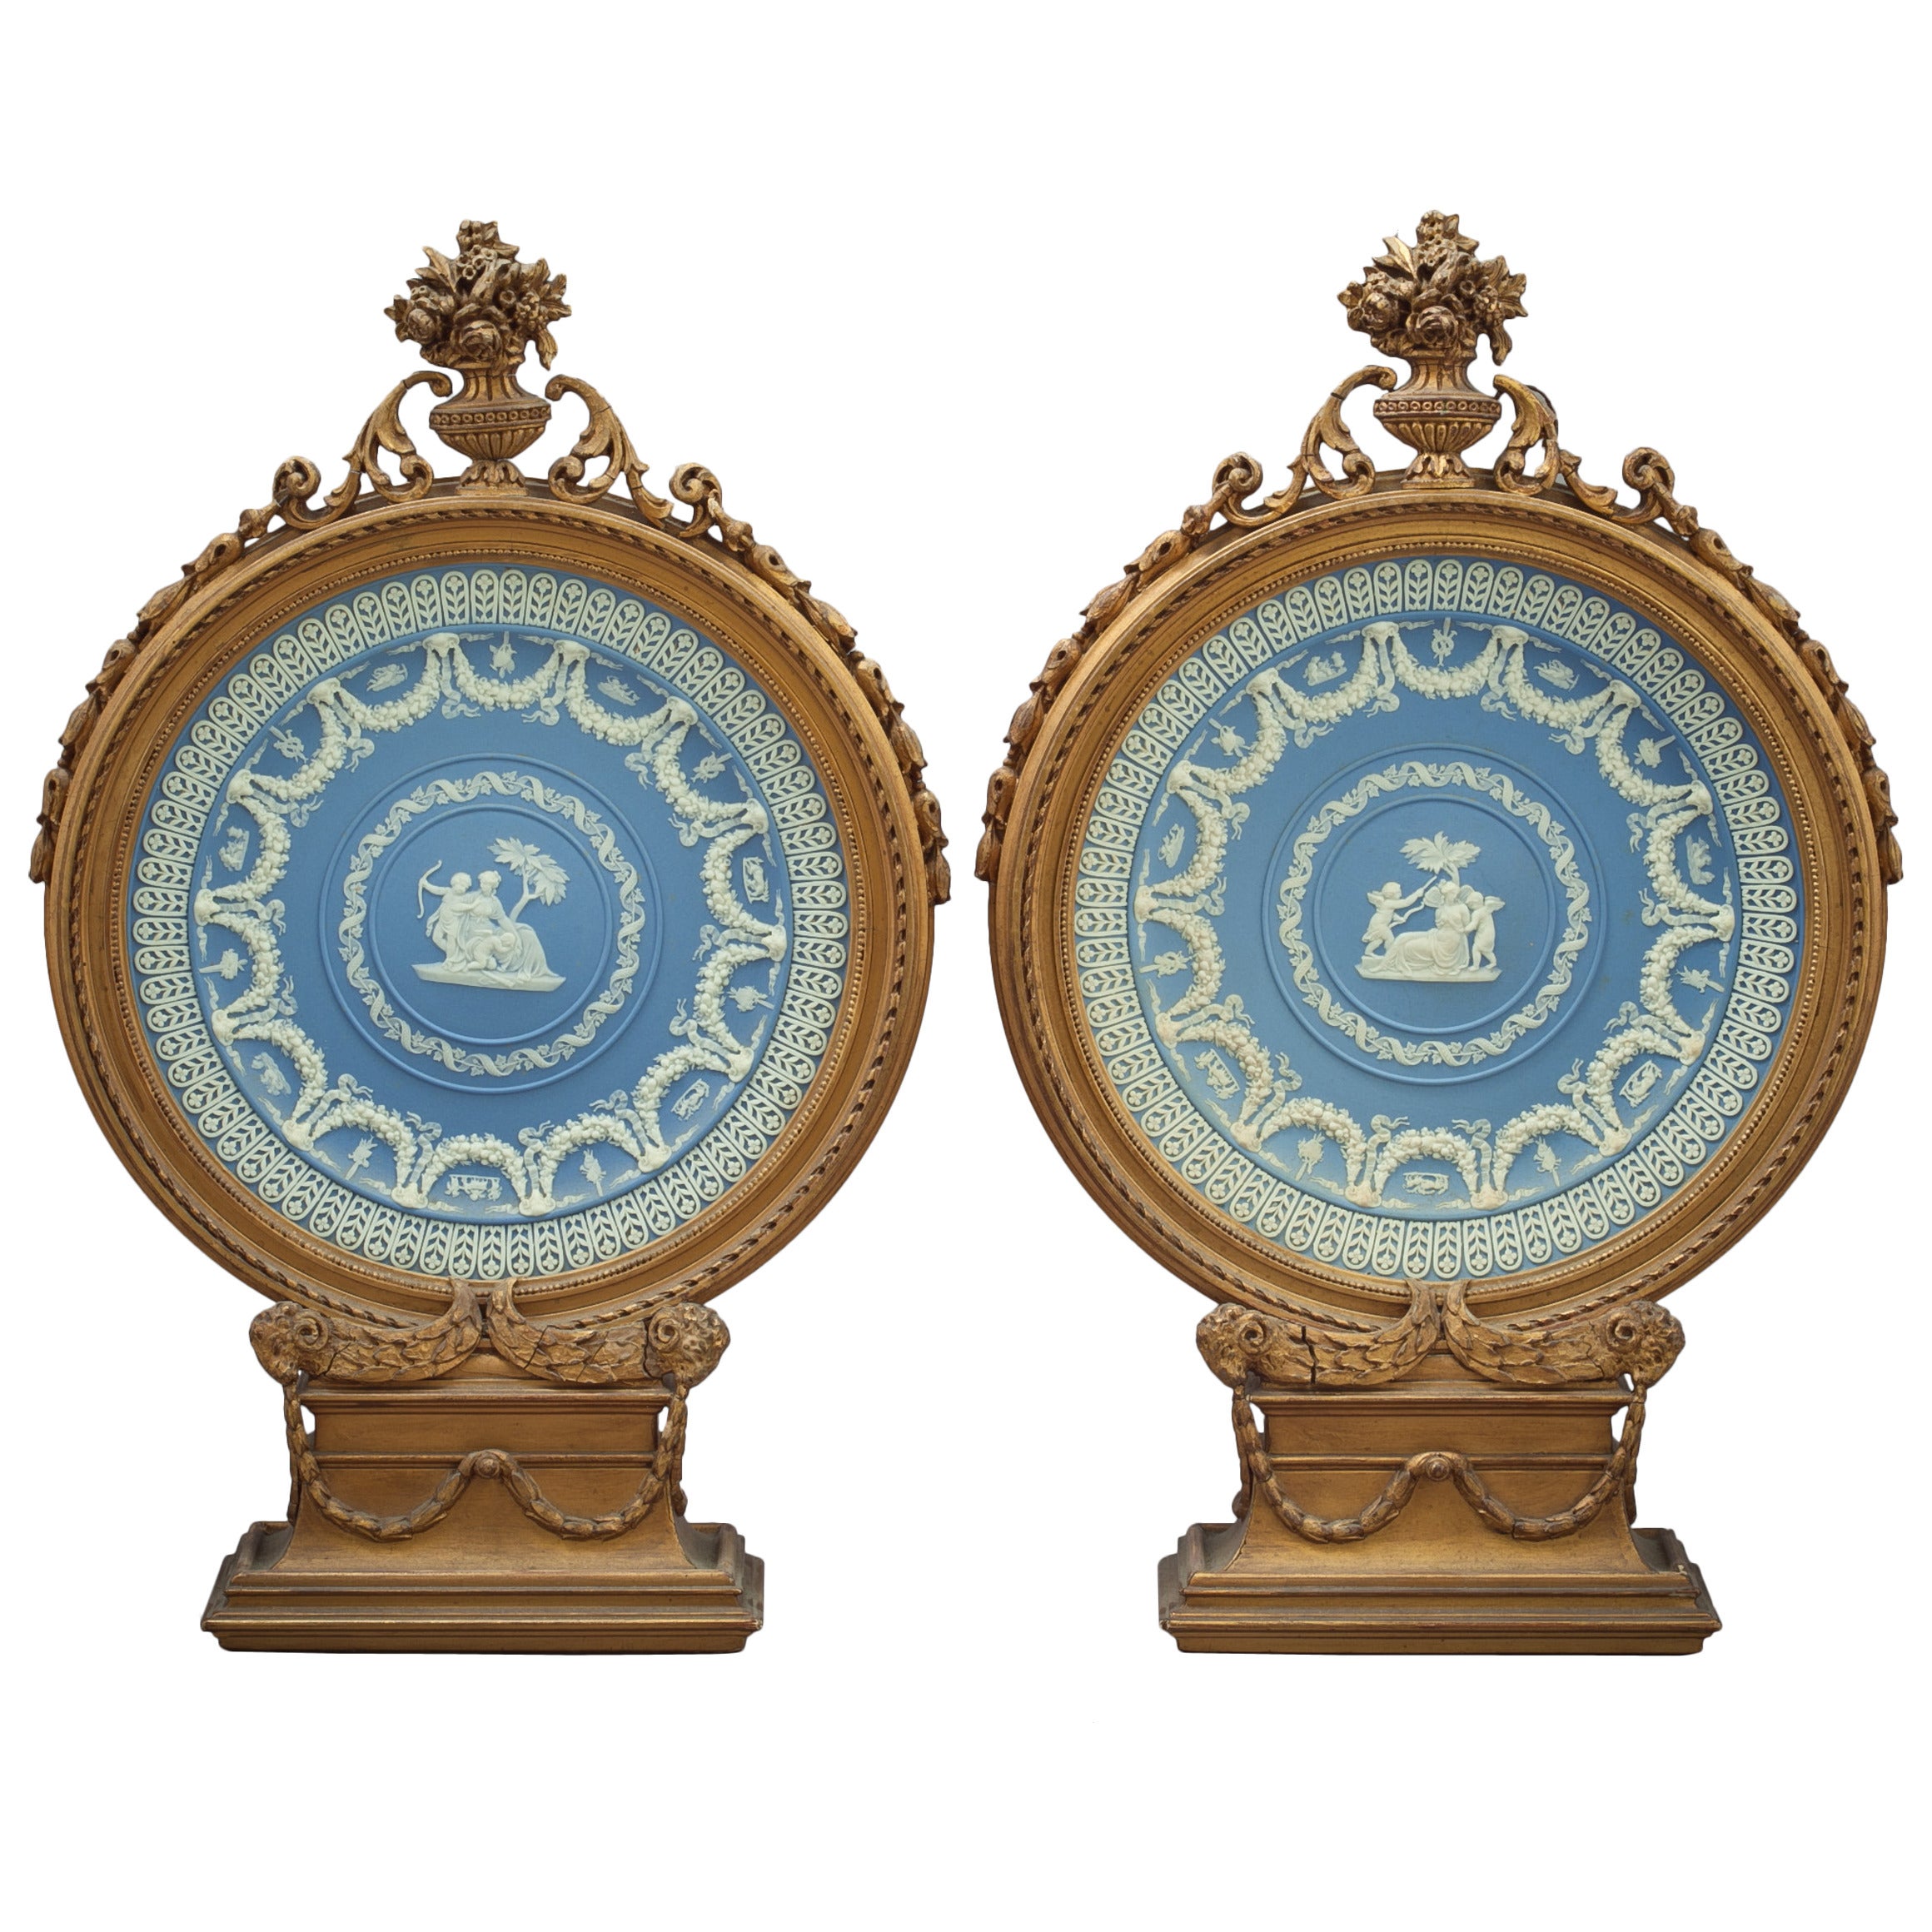 Paire de plaques circulaires Wedgwood encadrées, datant d'environ 1875